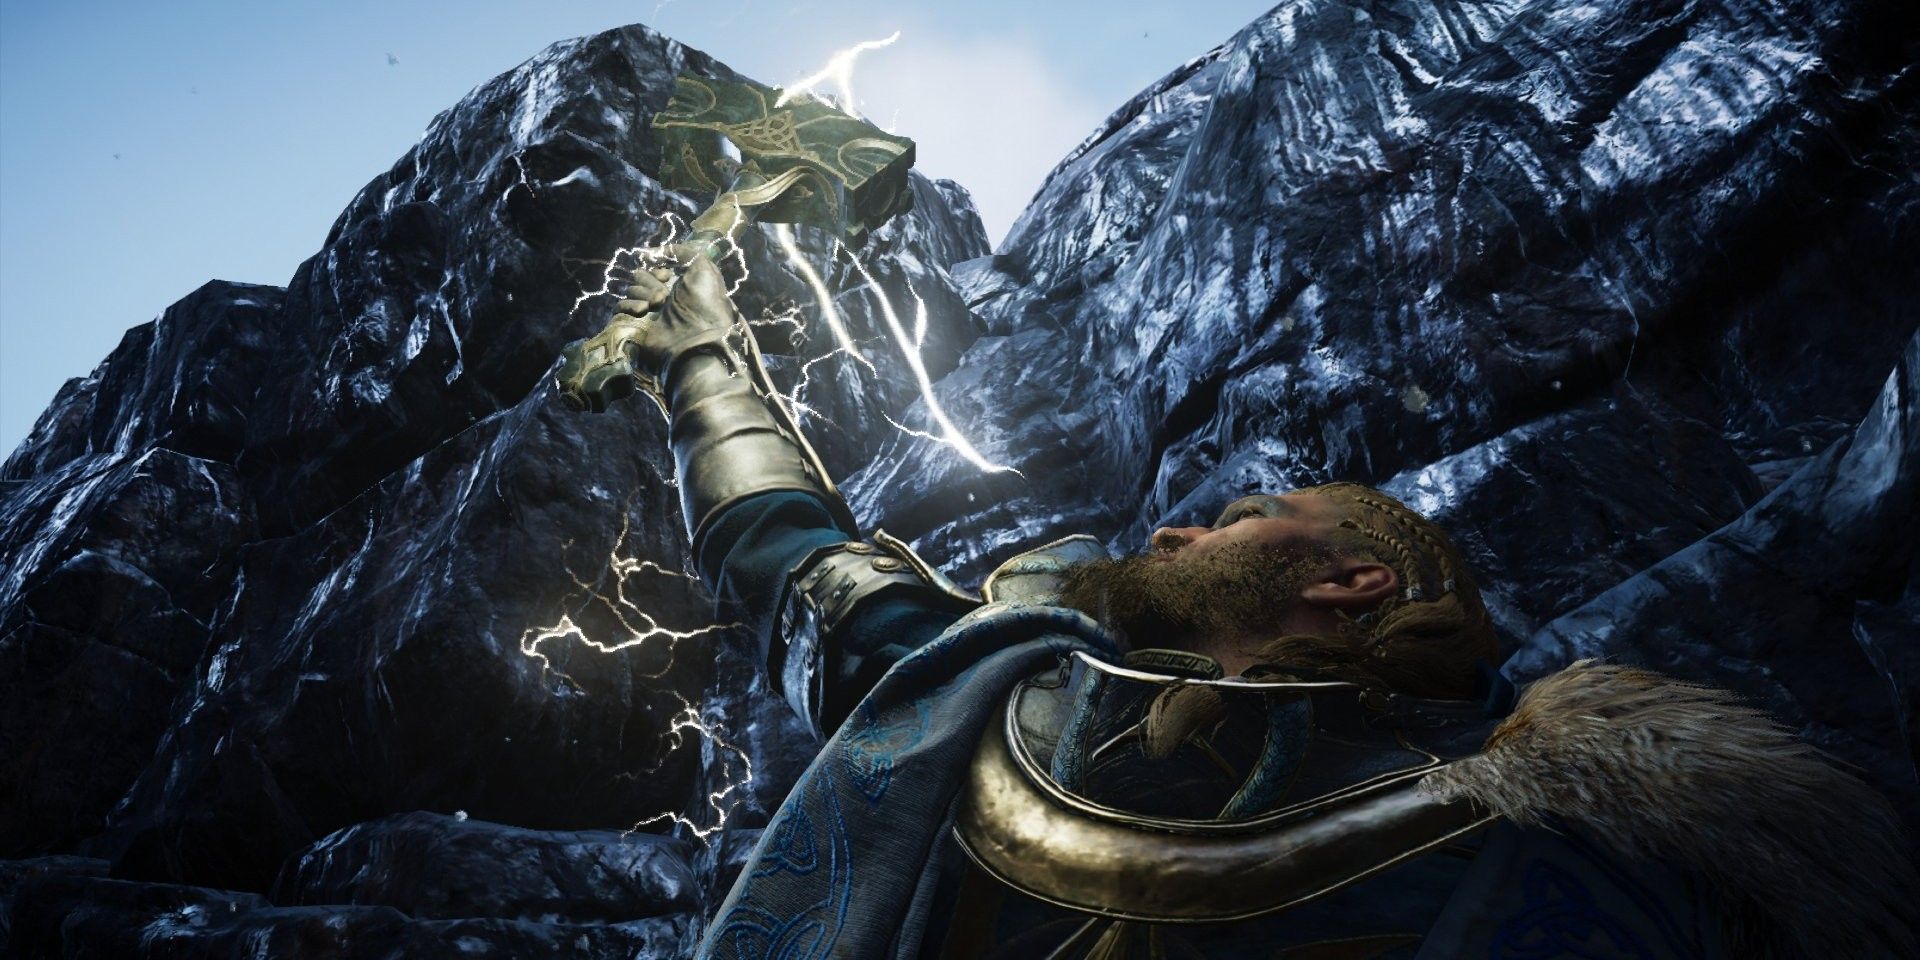 Mjolnir summons lightning in Assassin's Creed Valhalla